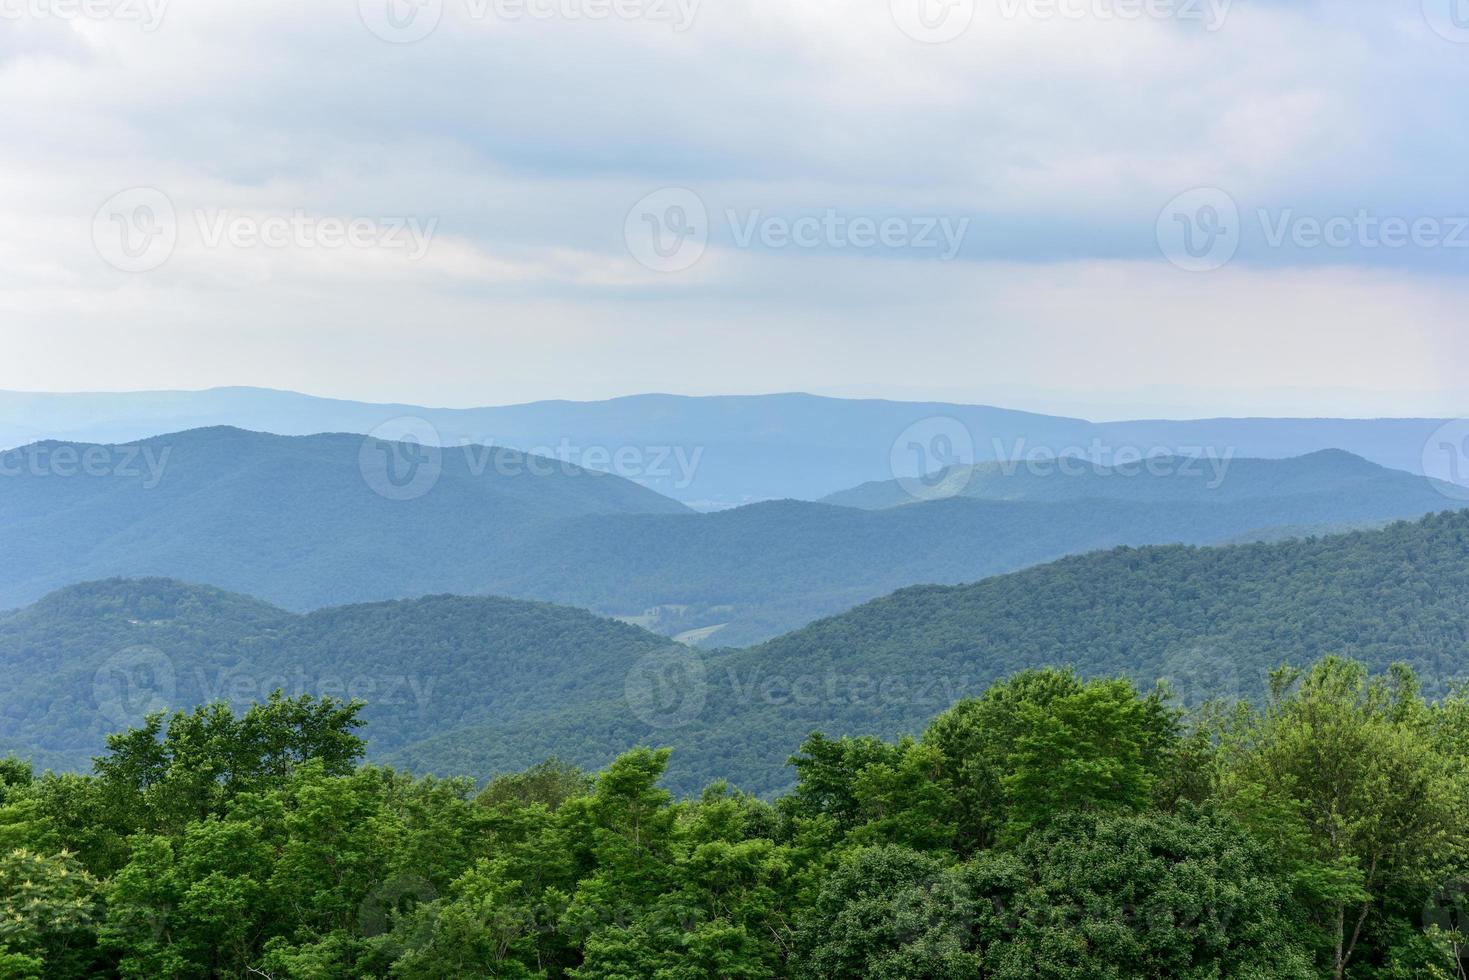 vista del valle de shenandoah y las montañas blue ridge desde el parque nacional de shenandoah, virginia foto